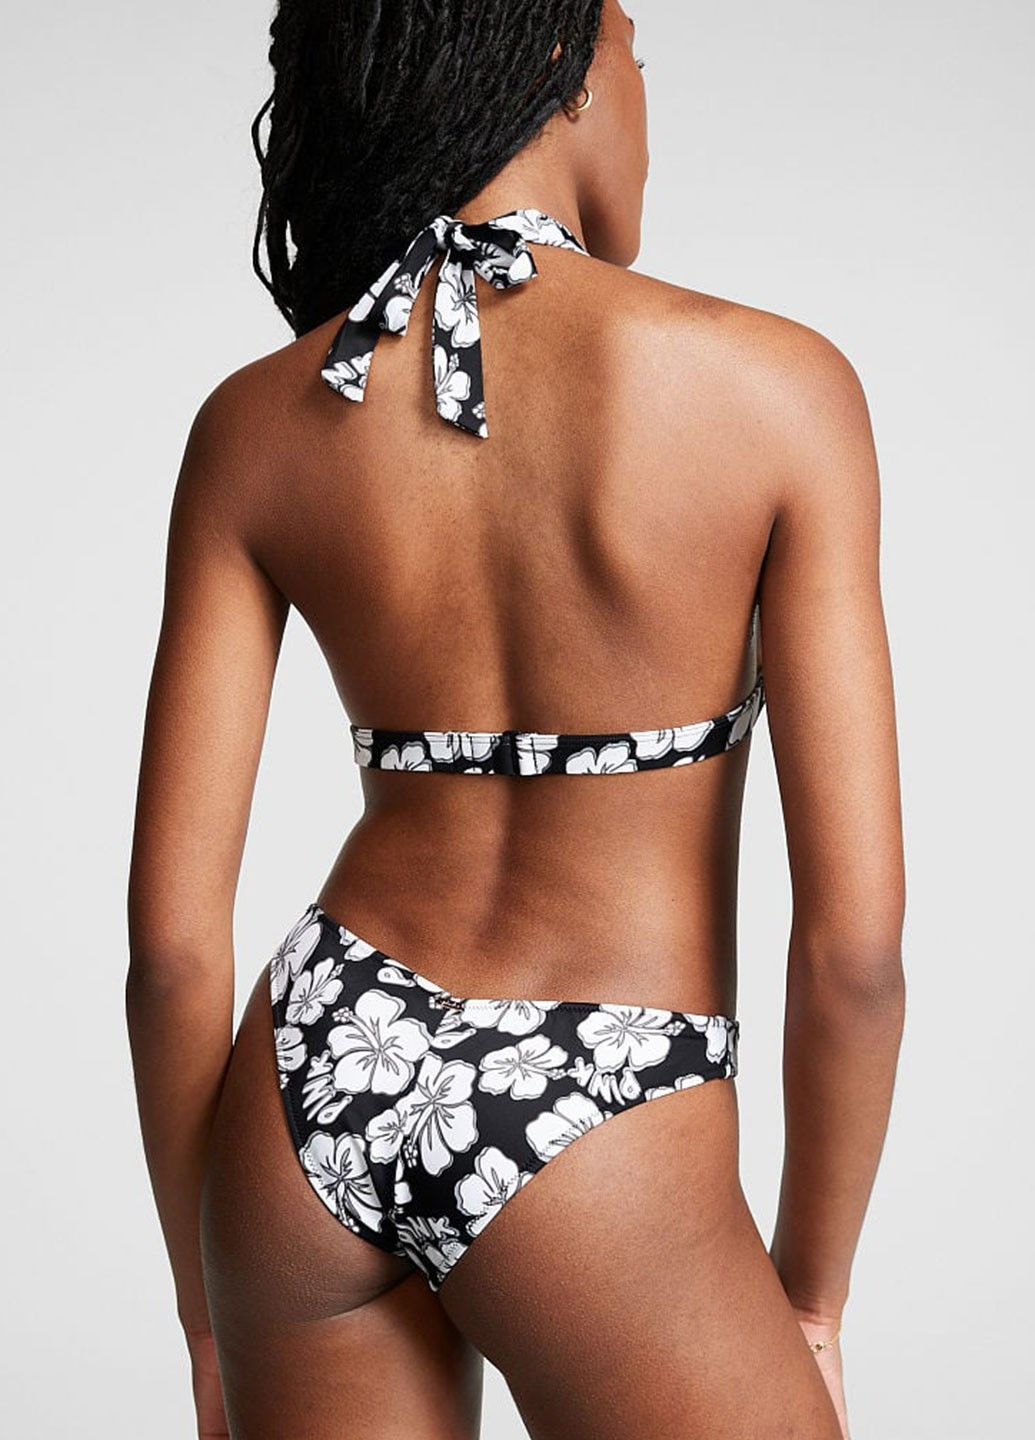 Черно-белый демисезонный купальник (лиф, трусики, юбка) раздельный, халтер Victoria's Secret